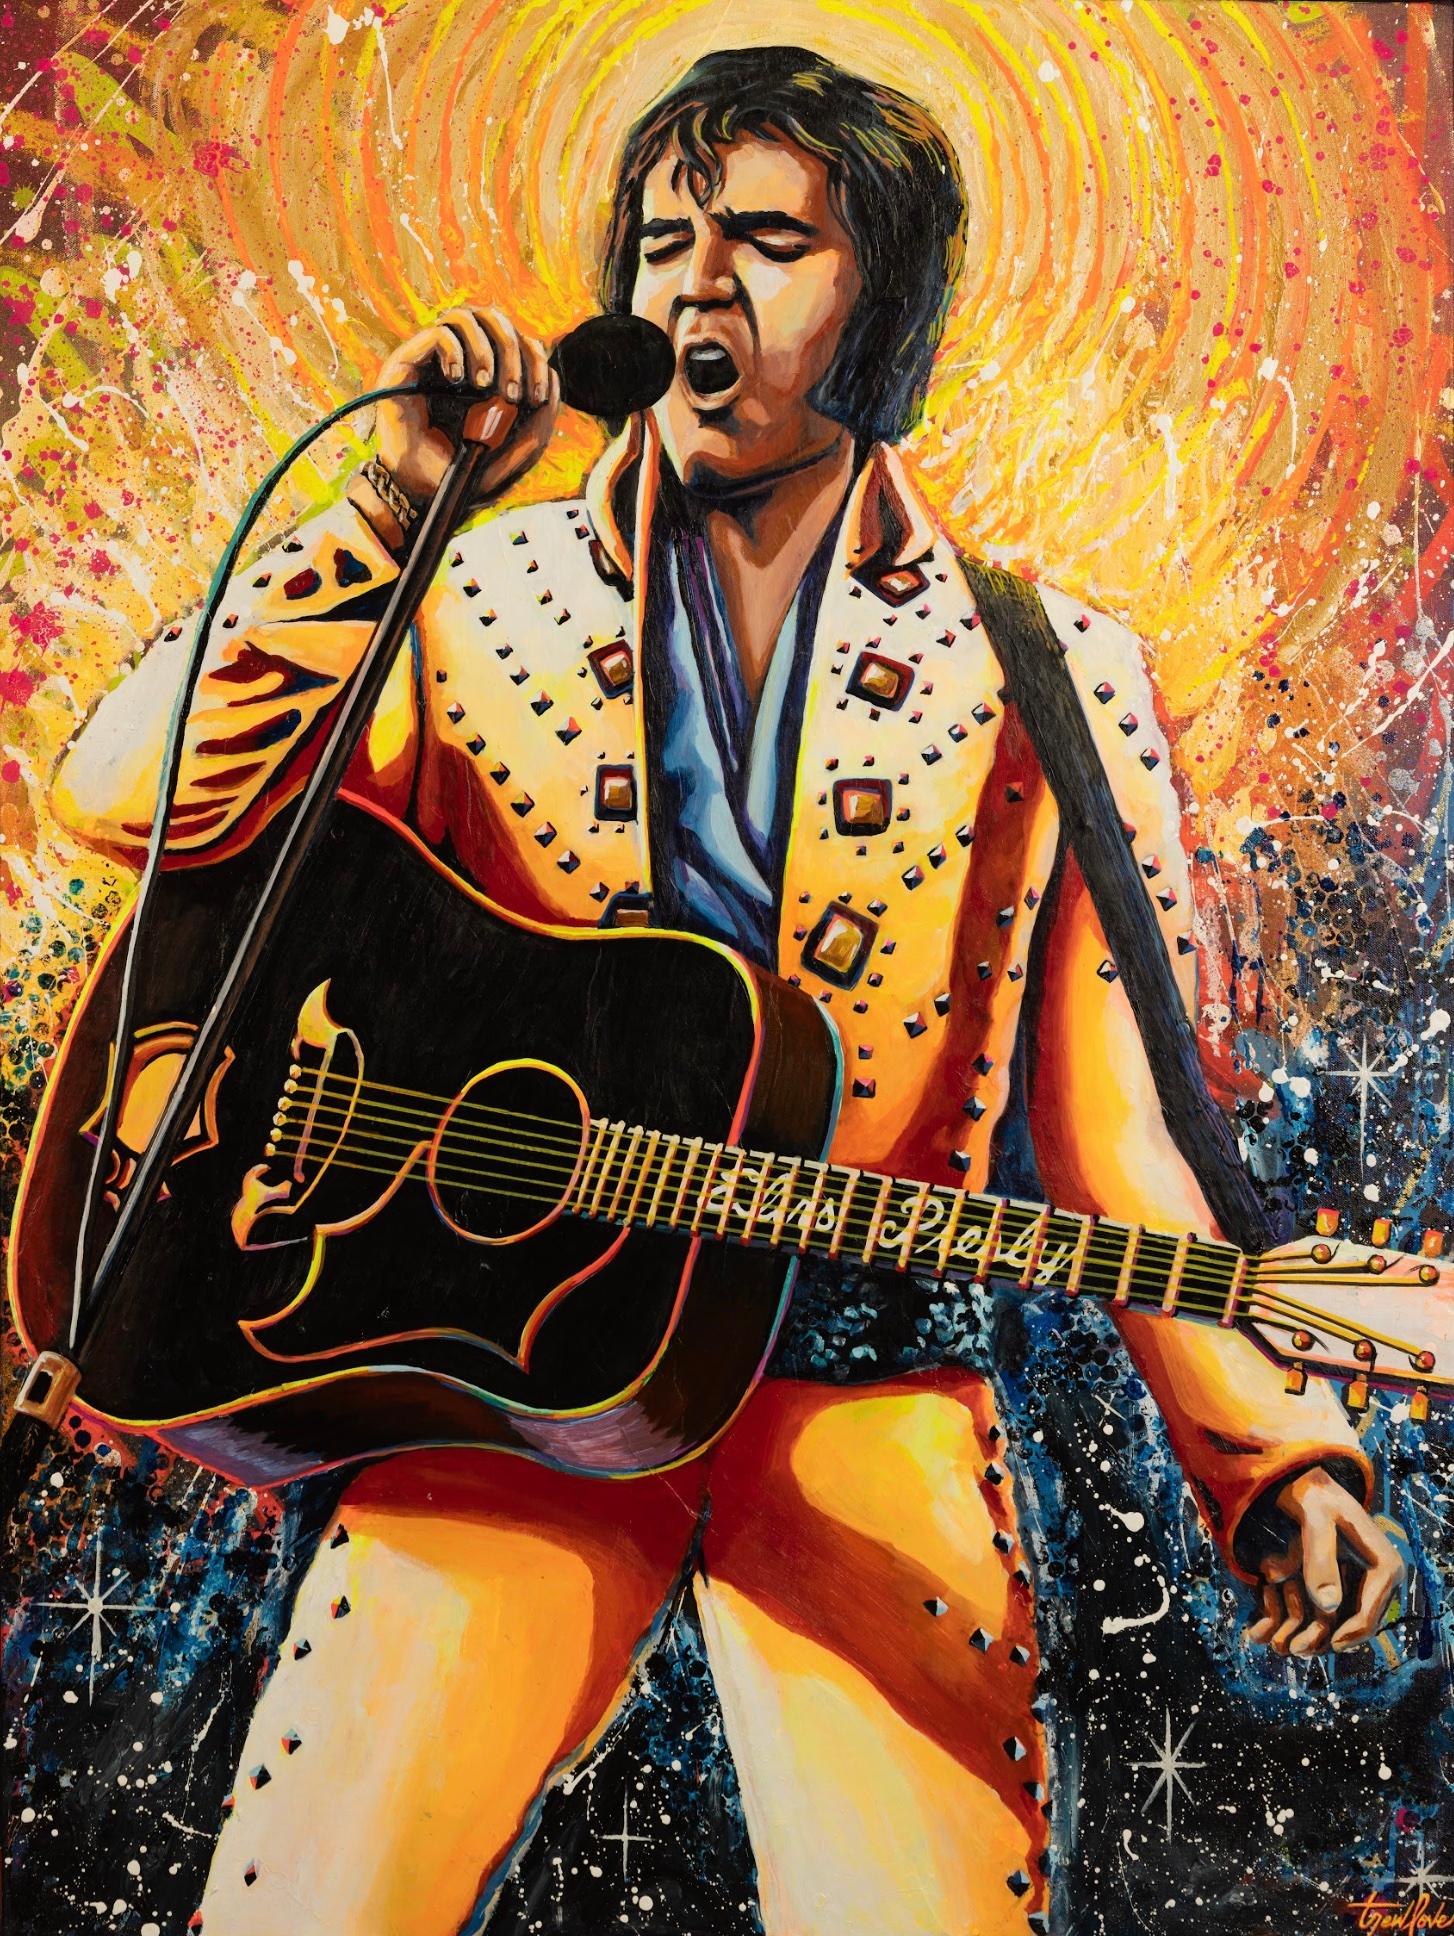 Trew Love Portrait Painting – White Hot – lebendiges und farbenfrohes, warmes Pop-Art-Gemälde von Elvis Presley